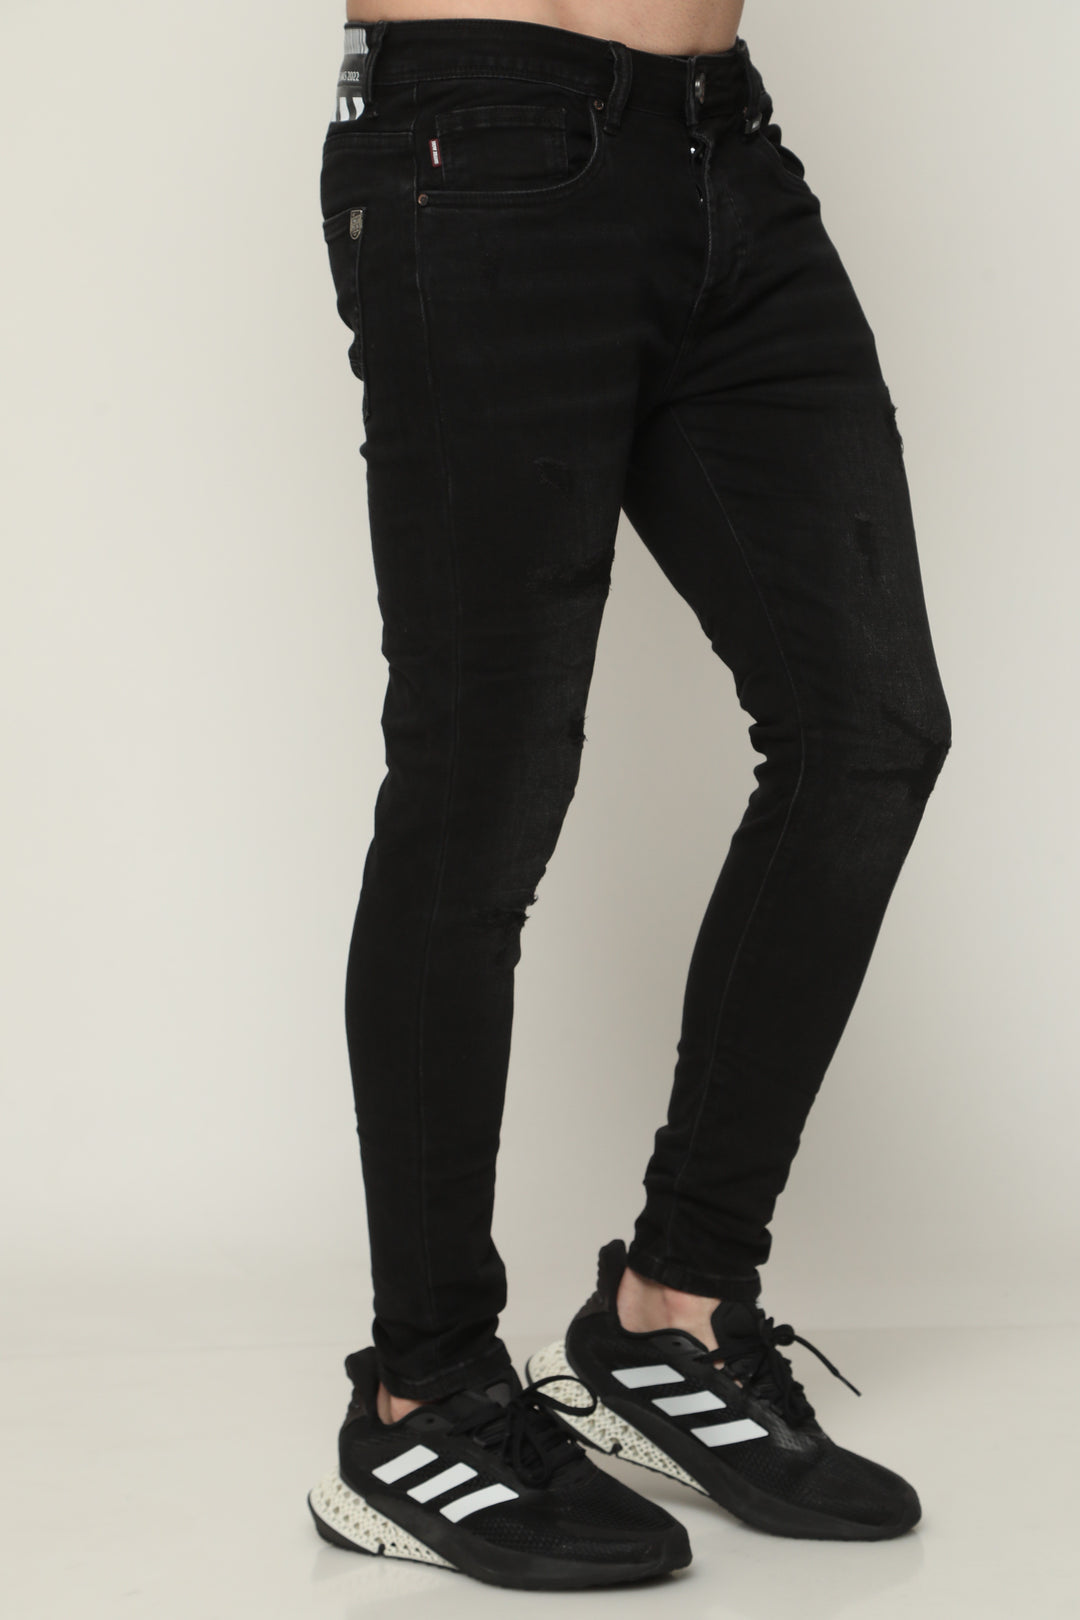 894 ג'ינס סופר סקיני - canavaro jeans